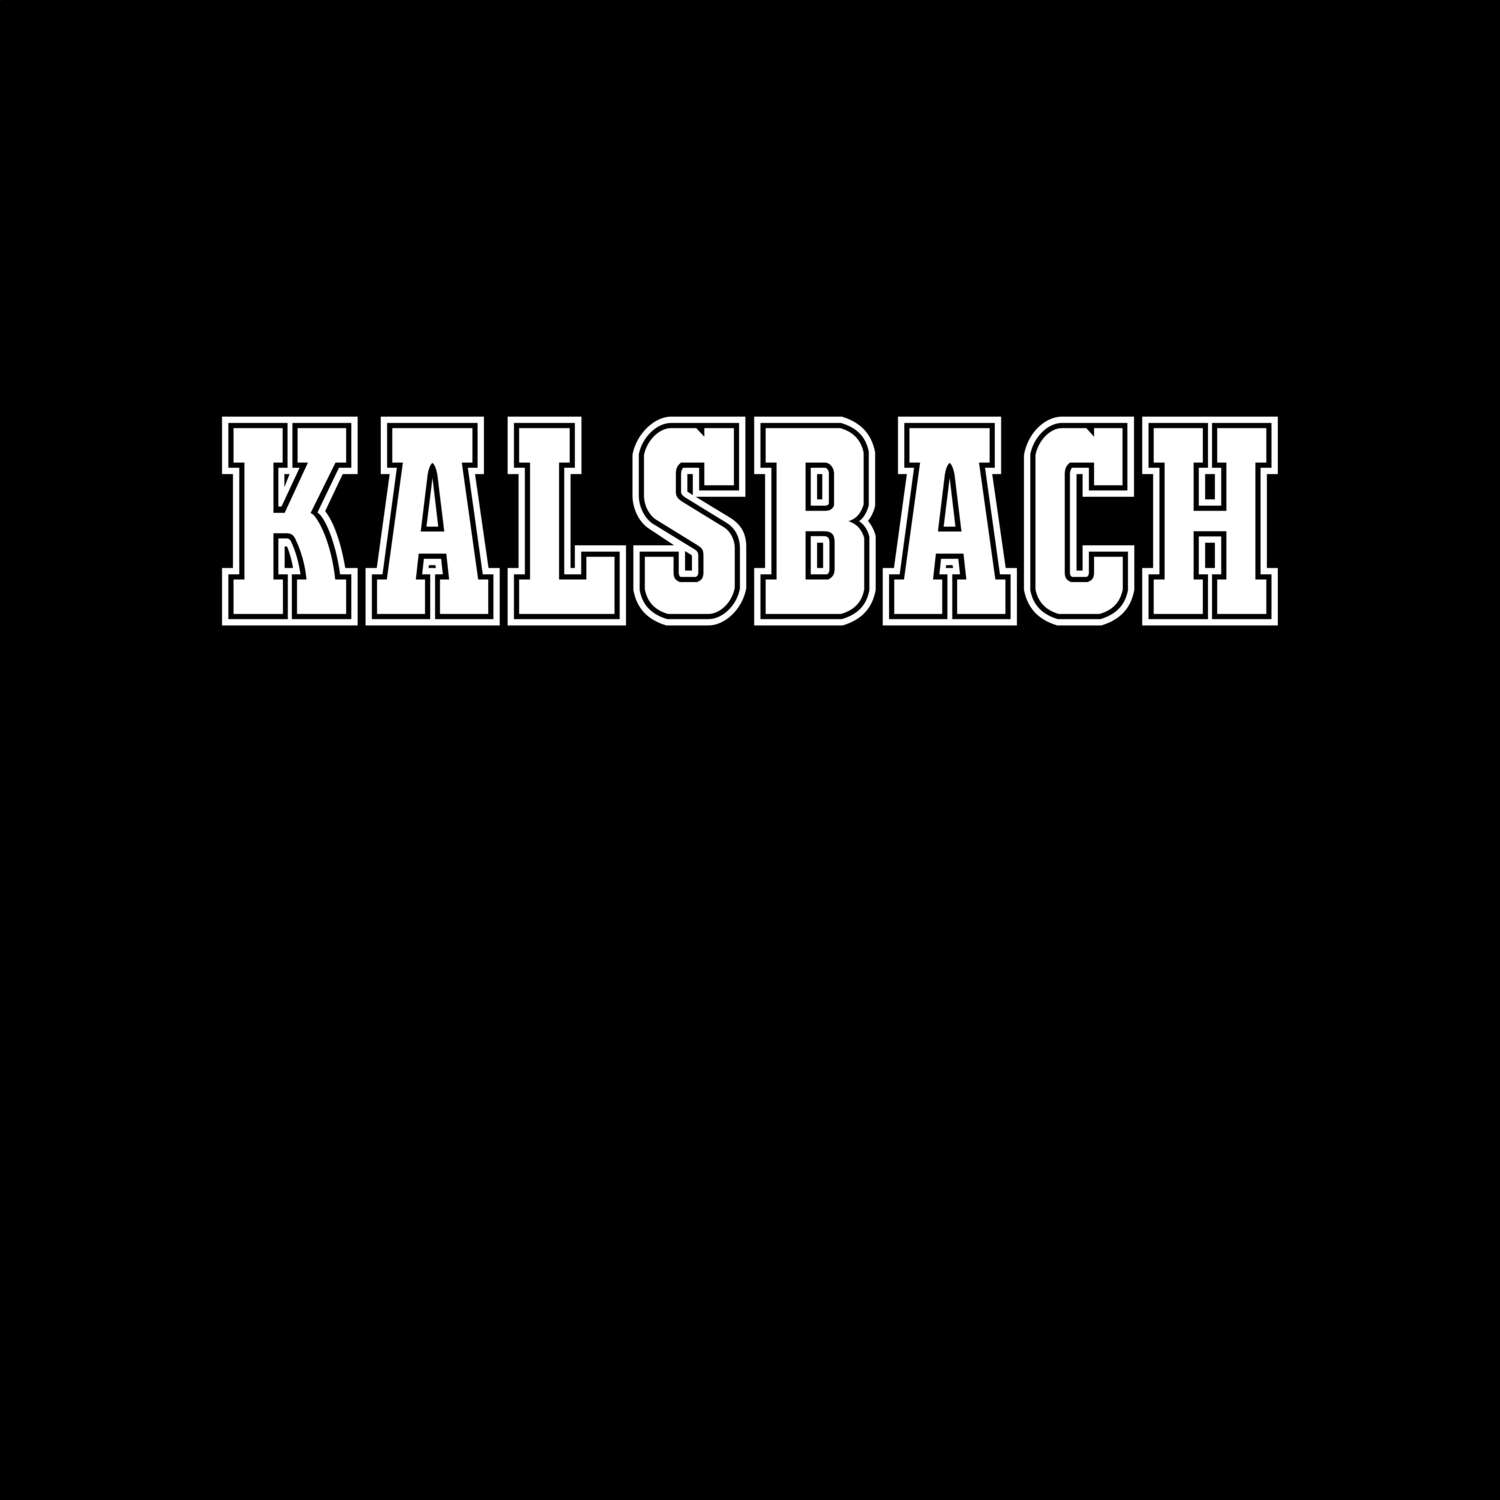 Kalsbach T-Shirt »Classic«